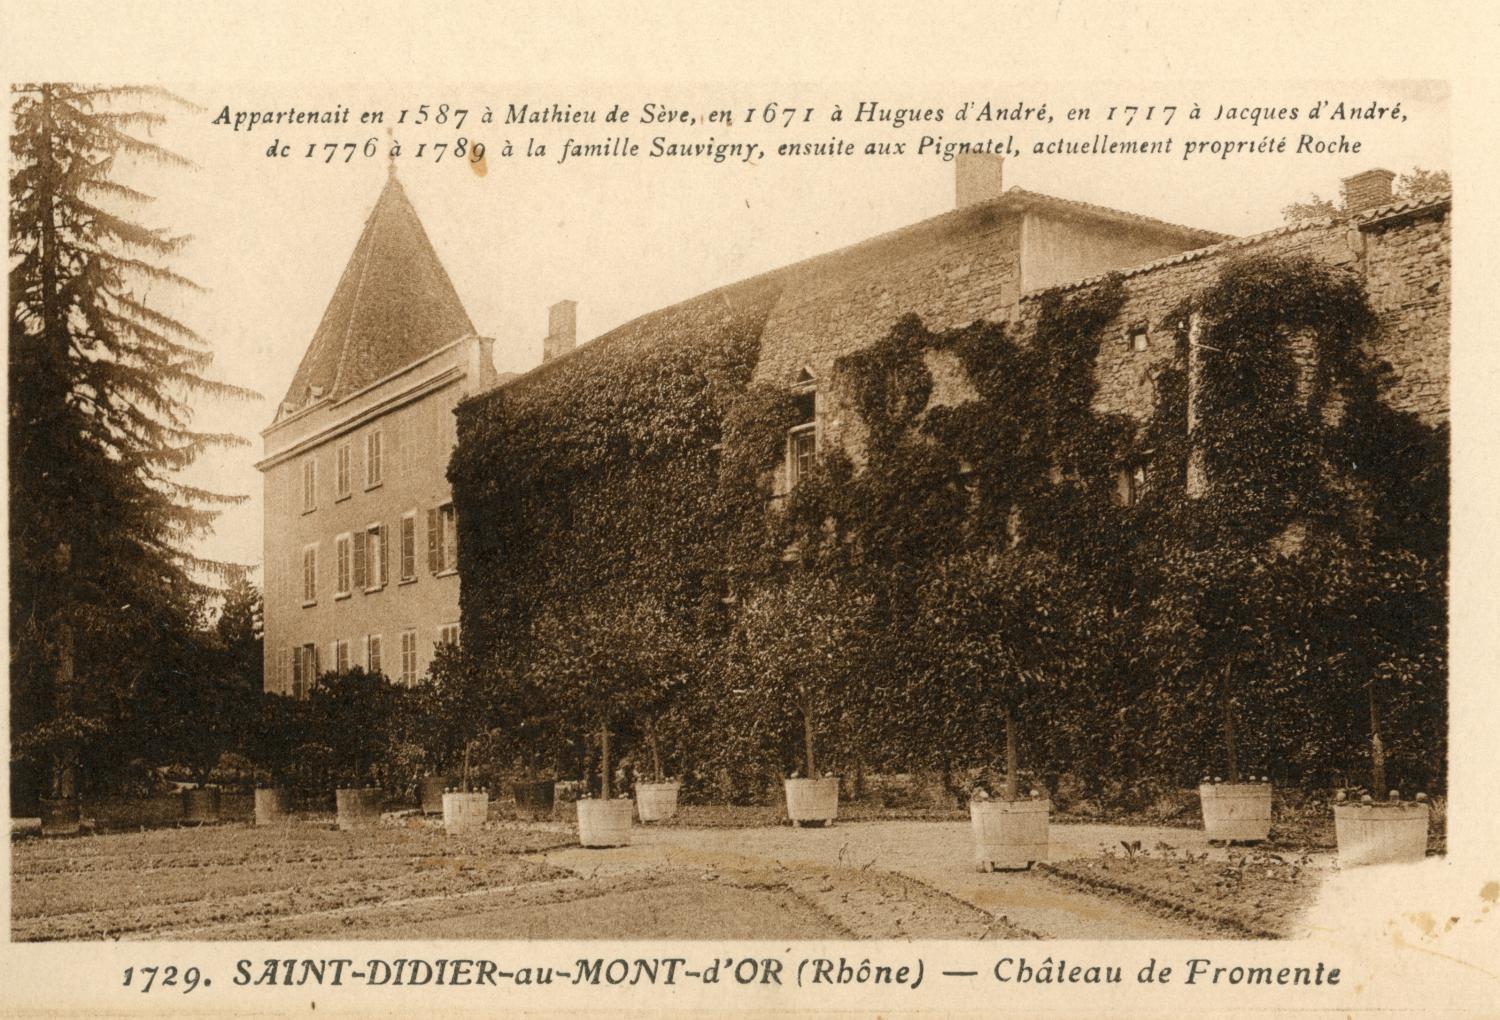 Saint-Didier-au-Mont-d'Or (Rhône). - Château de Fromente